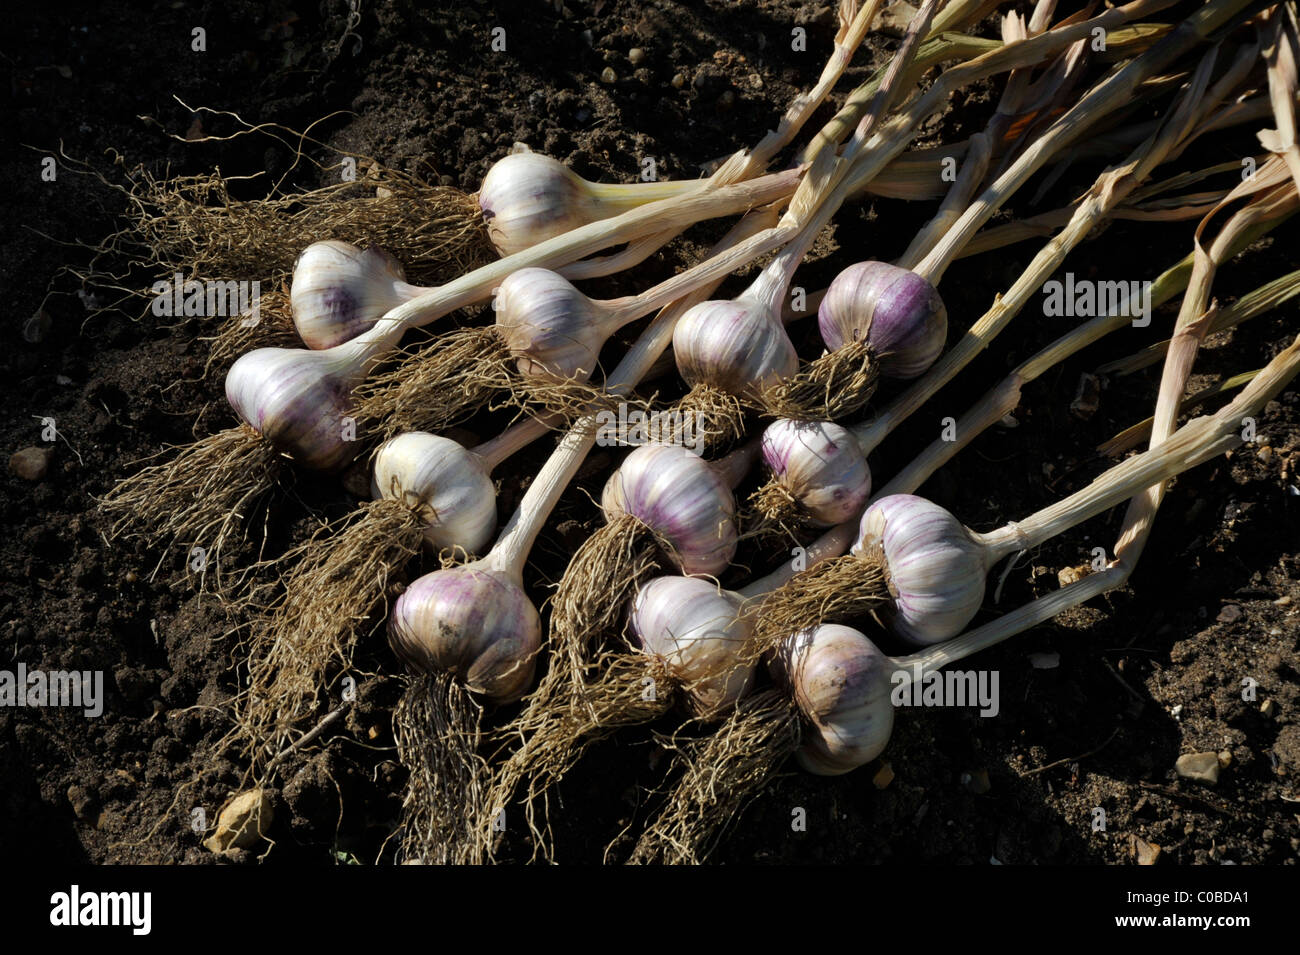 Bulbi di aglio ( allium sativum) sollevata e posta ad asciugare fuori in giardino. Foto Stock